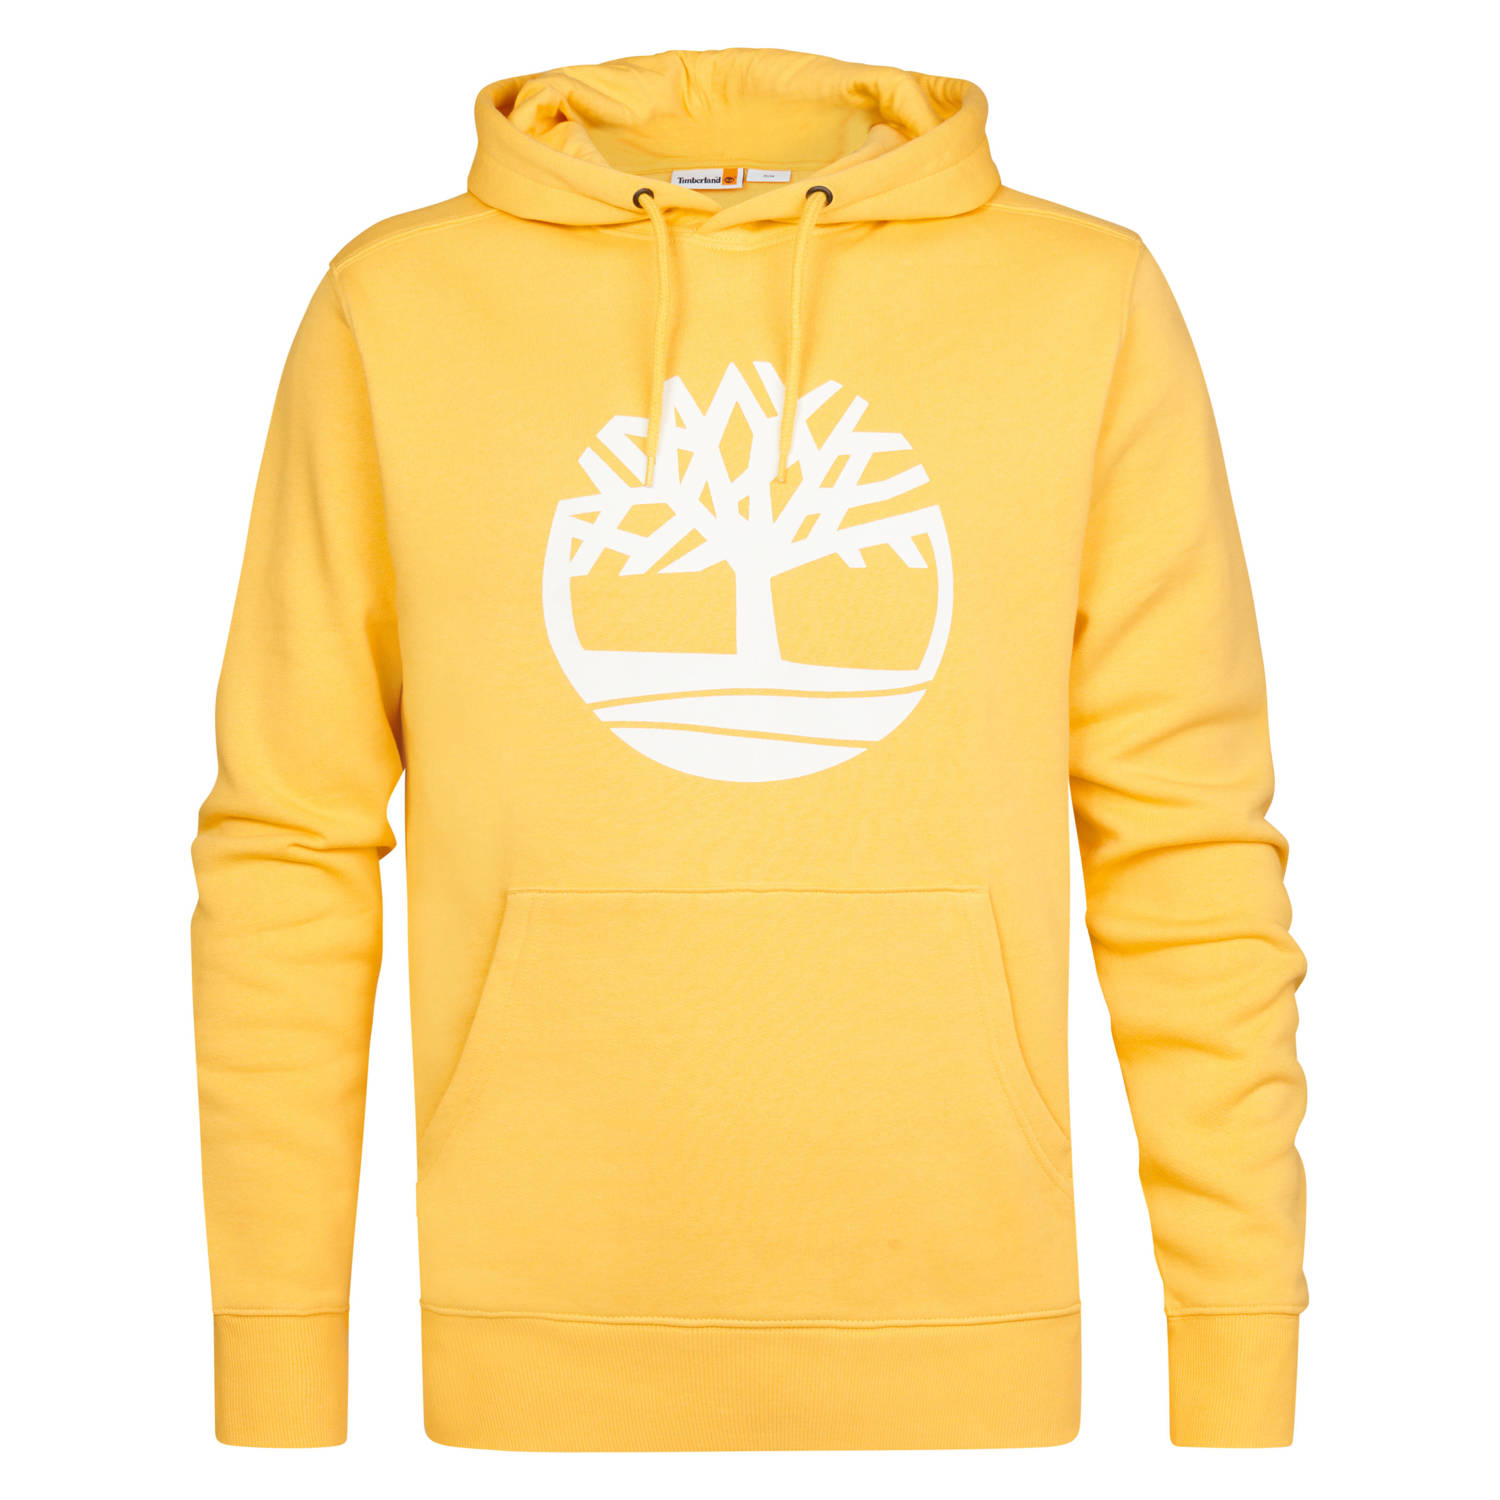 Timberland hoodie met printopdruk geel